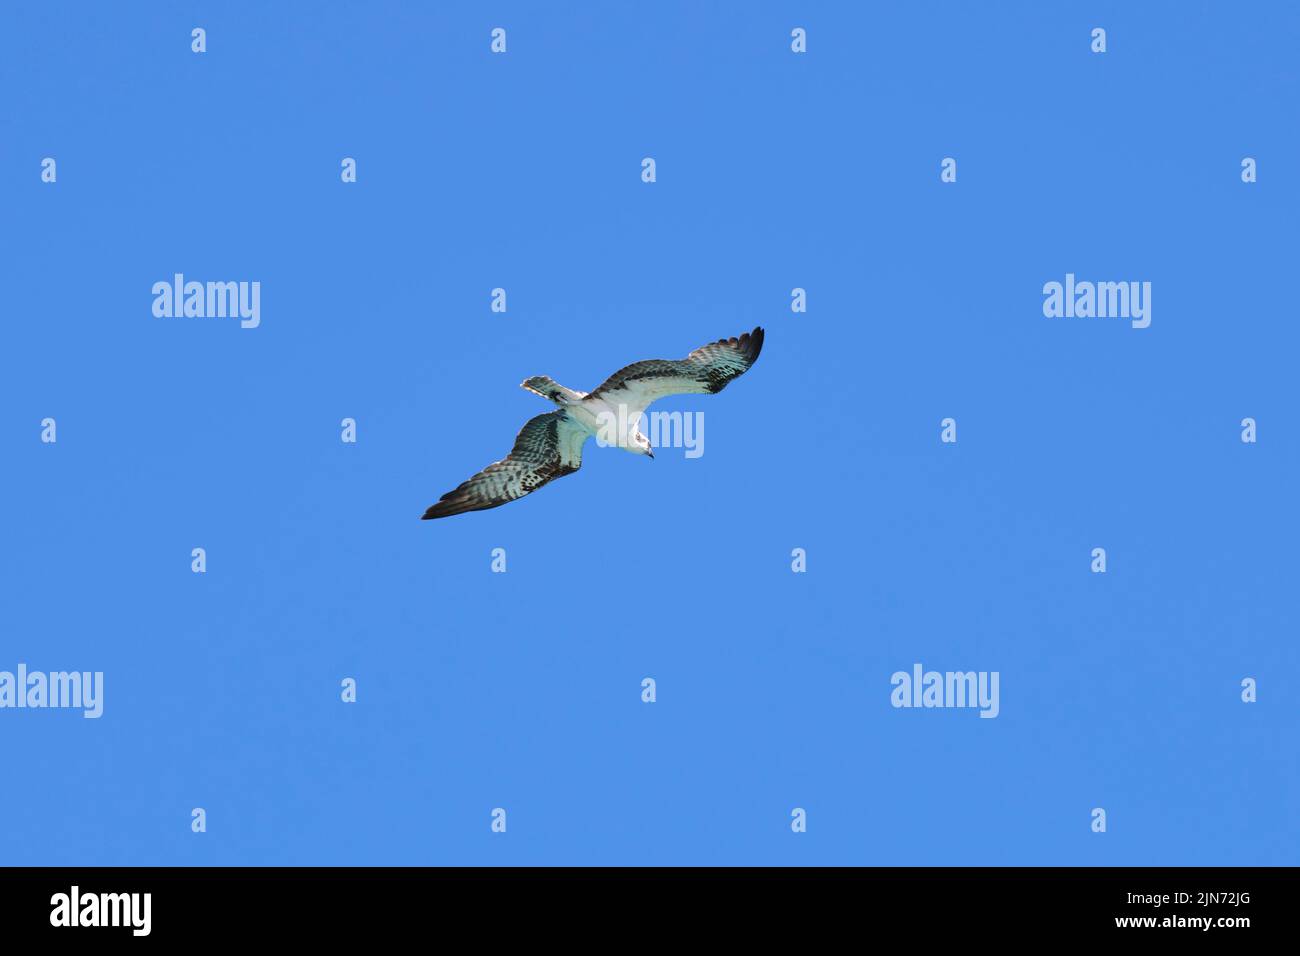 Magnifique aigle à oiseaux sauvages avec ailes étalées volant haut dans le ciel bleu Banque D'Images